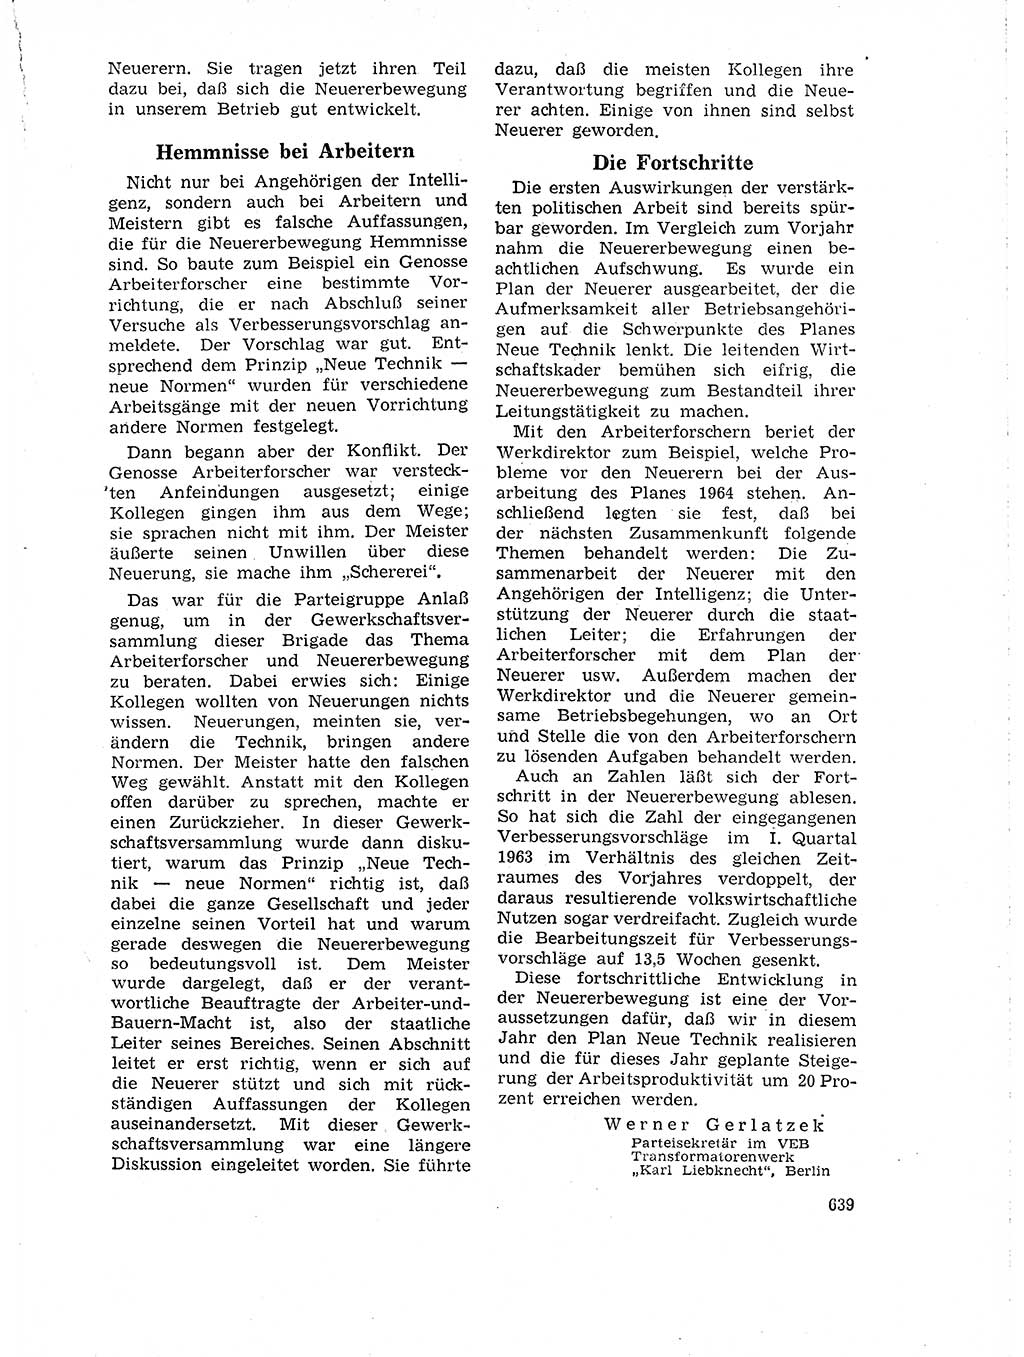 Neuer Weg (NW), Organ des Zentralkomitees (ZK) der SED (Sozialistische Einheitspartei Deutschlands) für Fragen des Parteilebens, 18. Jahrgang [Deutsche Demokratische Republik (DDR)] 1963, Seite 639 (NW ZK SED DDR 1963, S. 639)